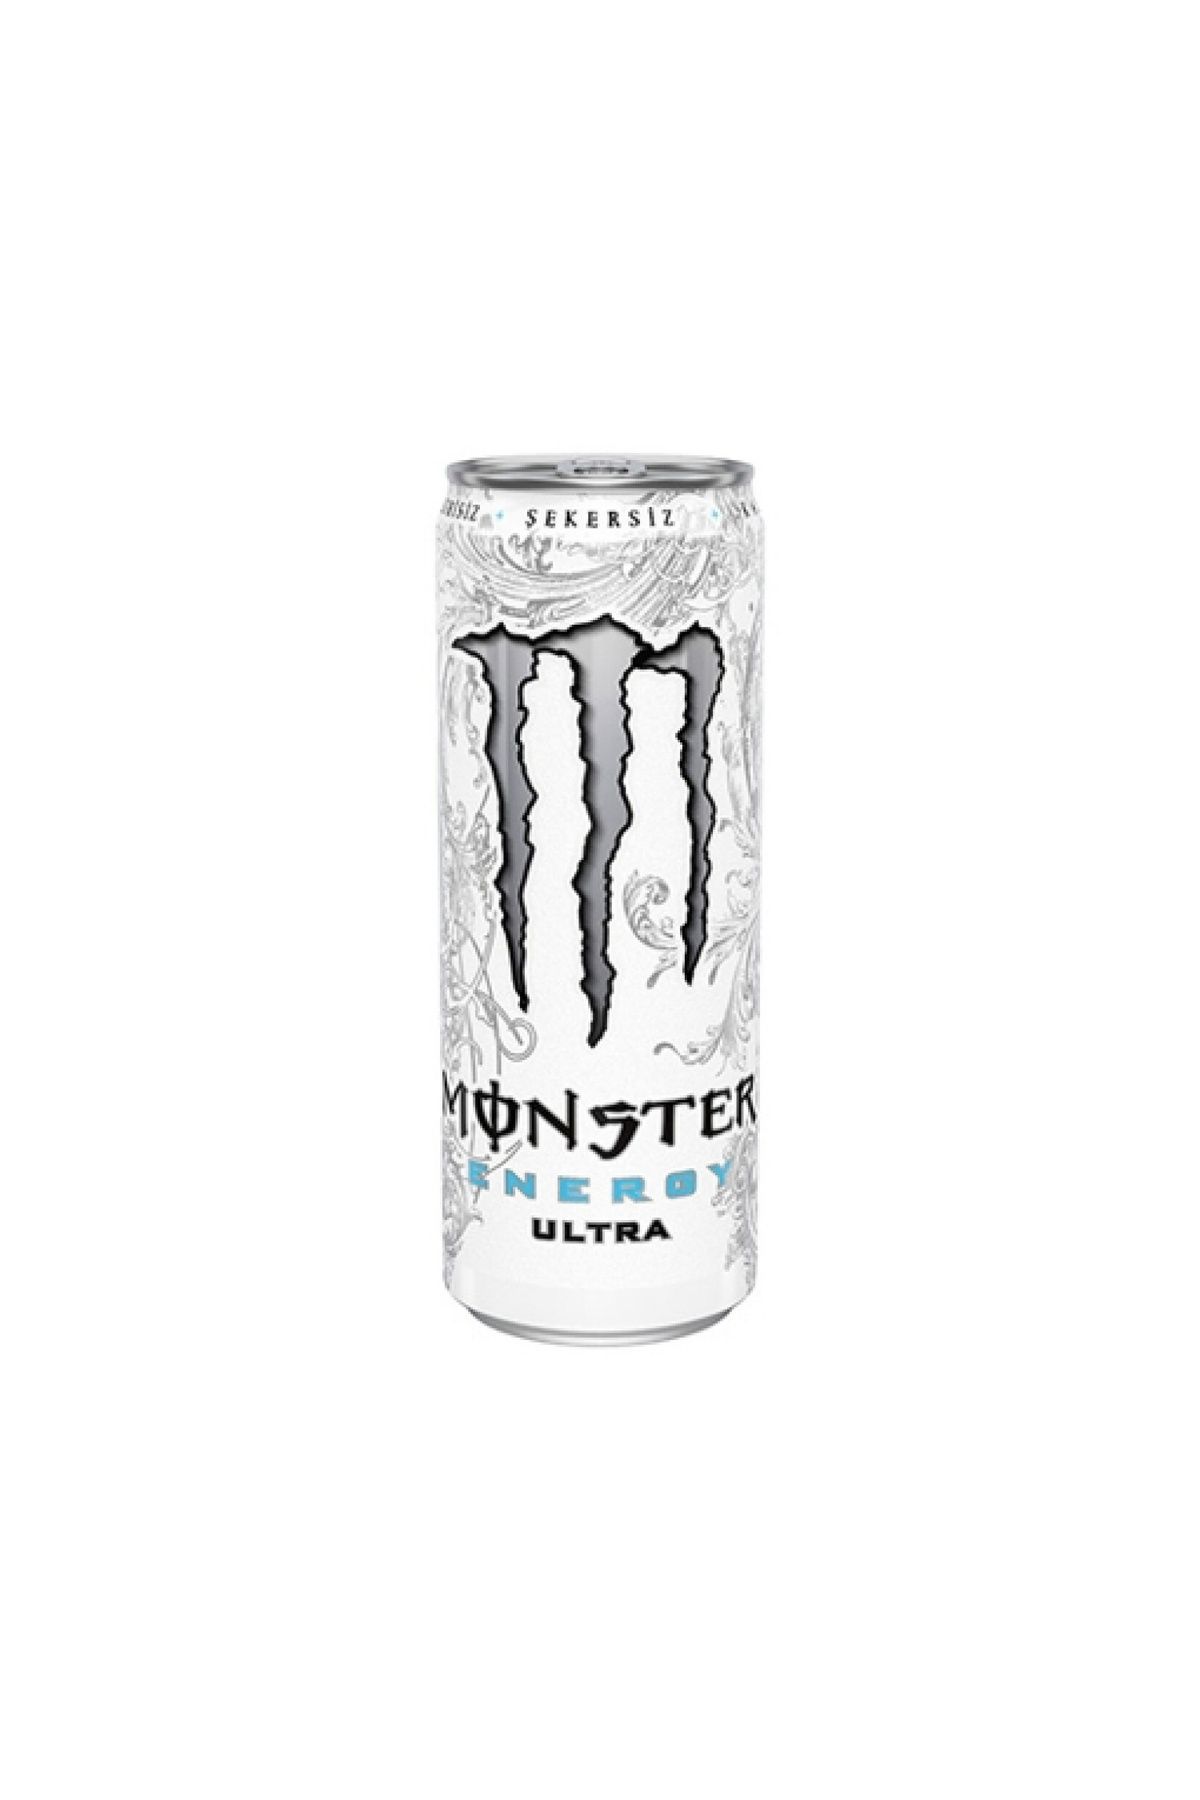 Monster Energy Monster Beyaz Enerji Tnk. 500 Ml. (12'Lİ)